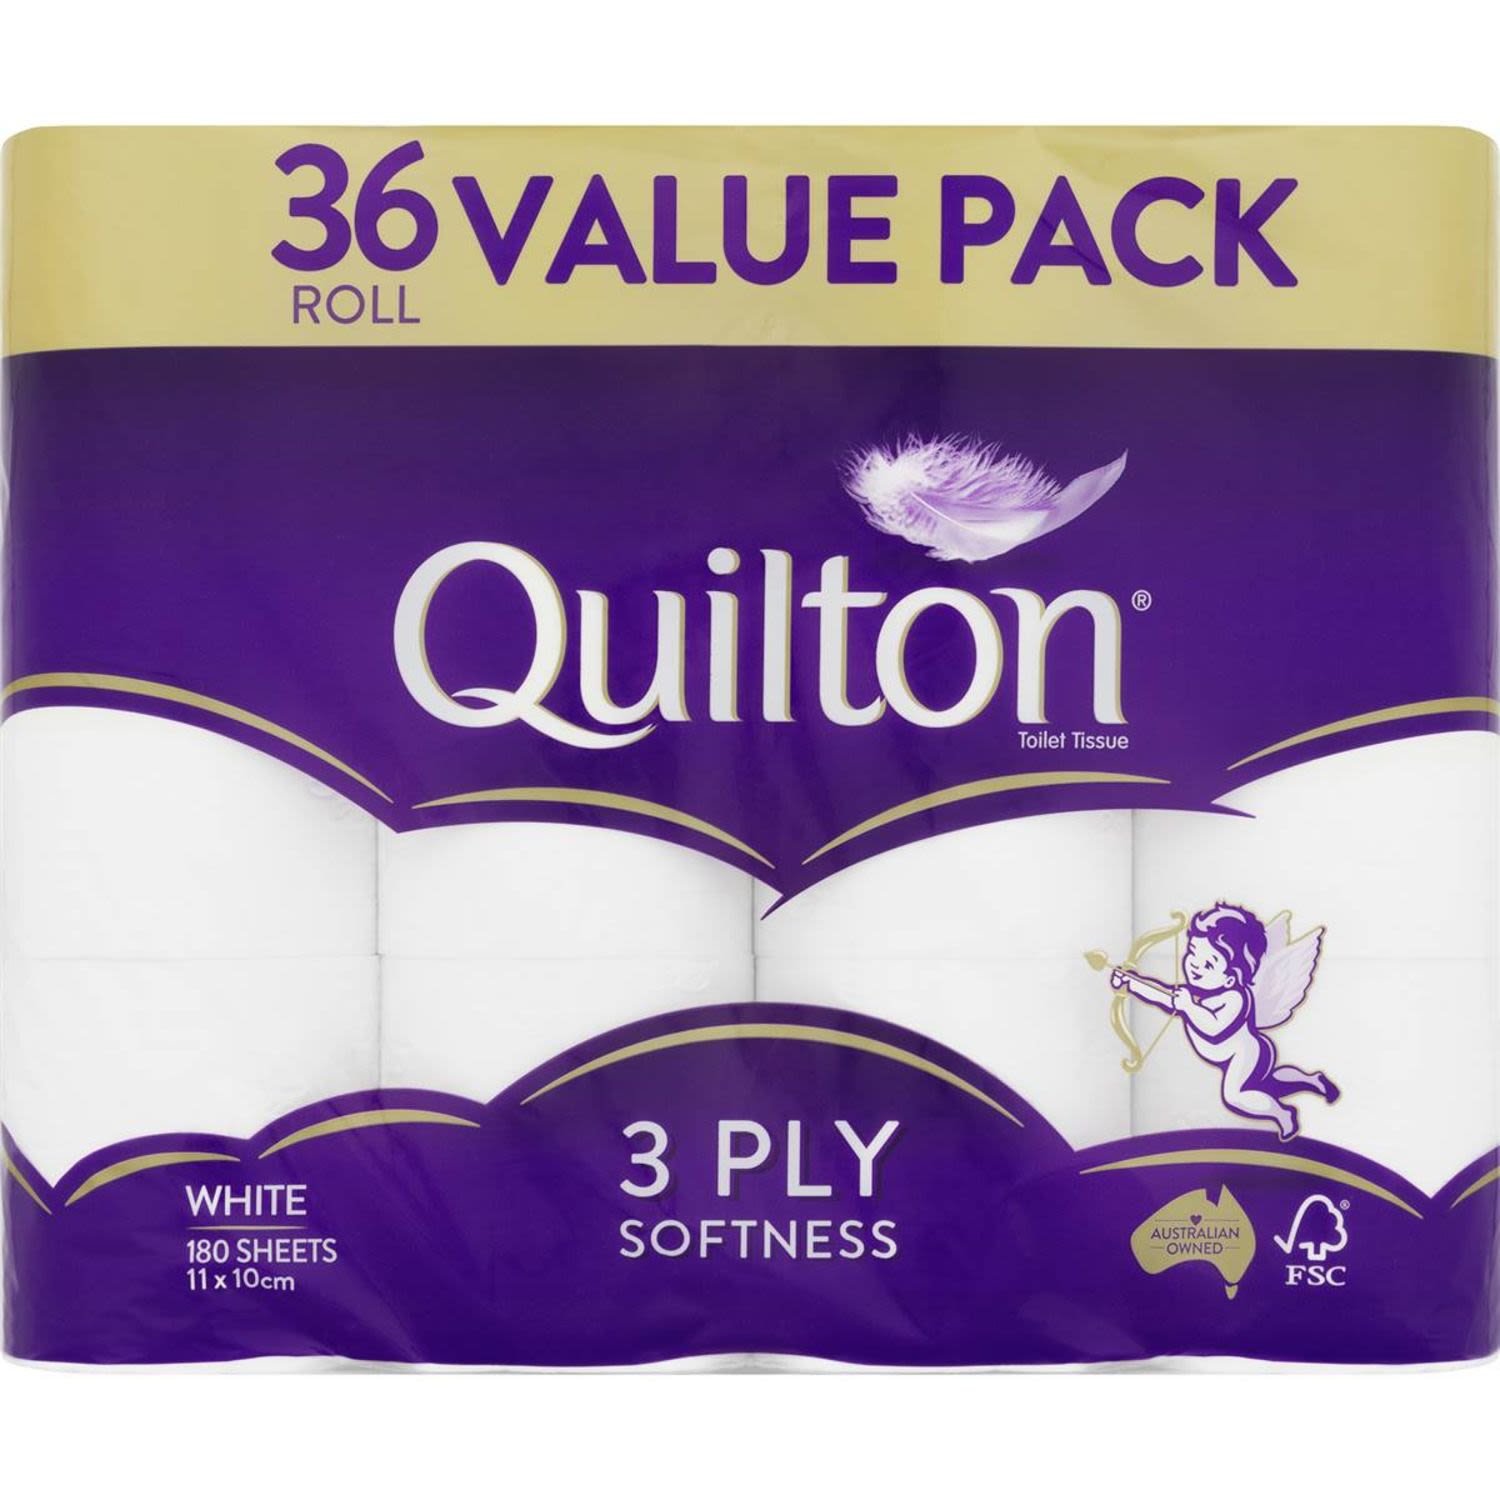 Quilton White 3 Ply Toilet Tissue, 36 Each